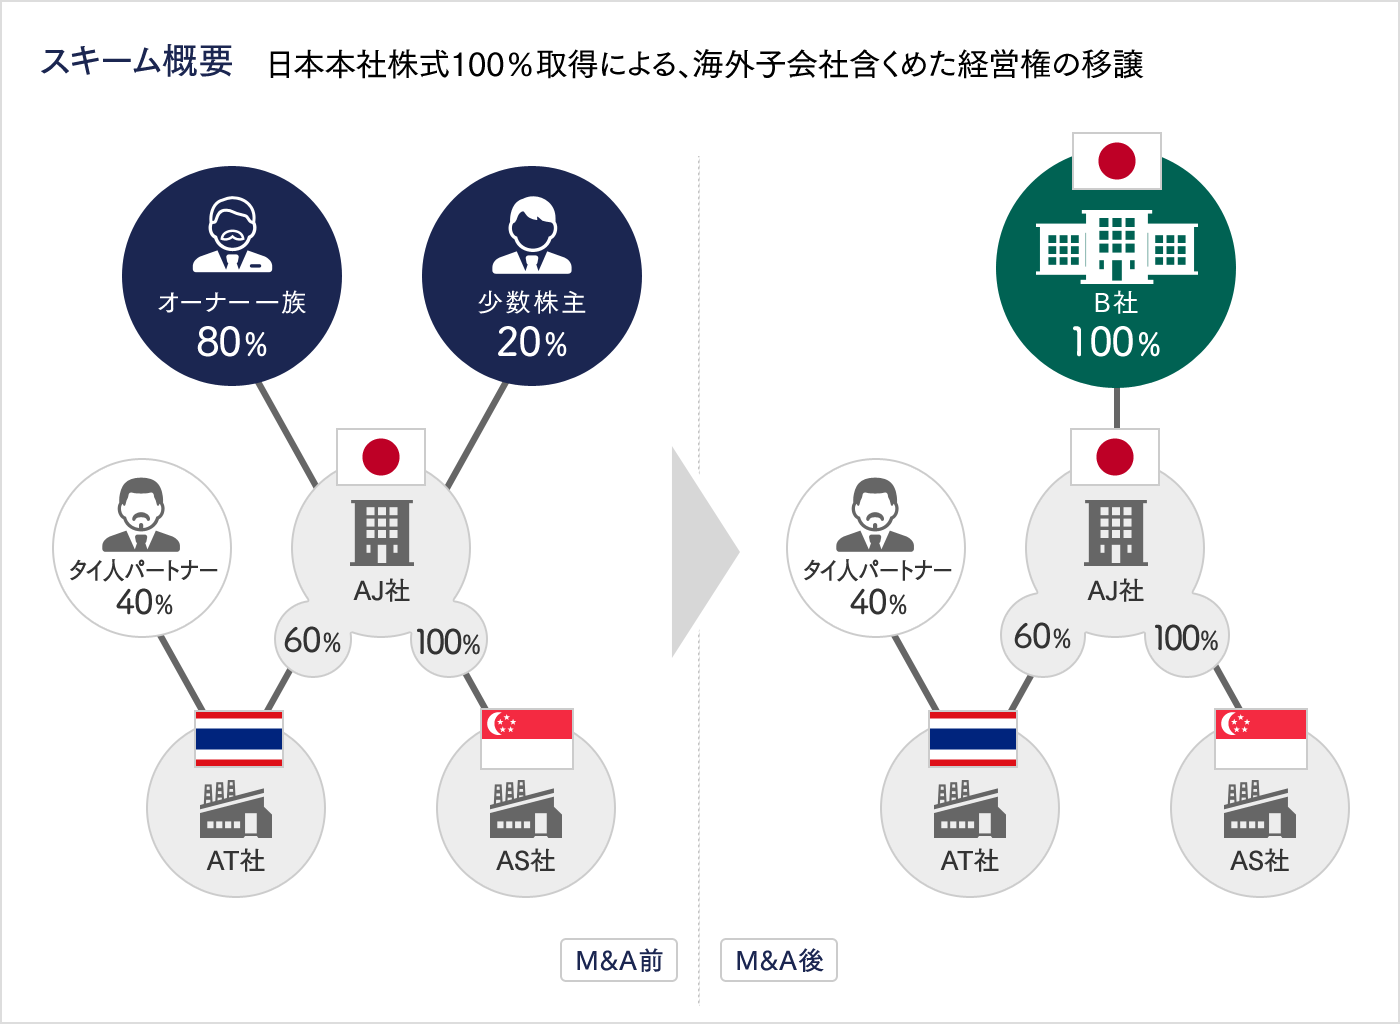 日本本社株式100%取得による、海外子会社含めた経営権の移譲